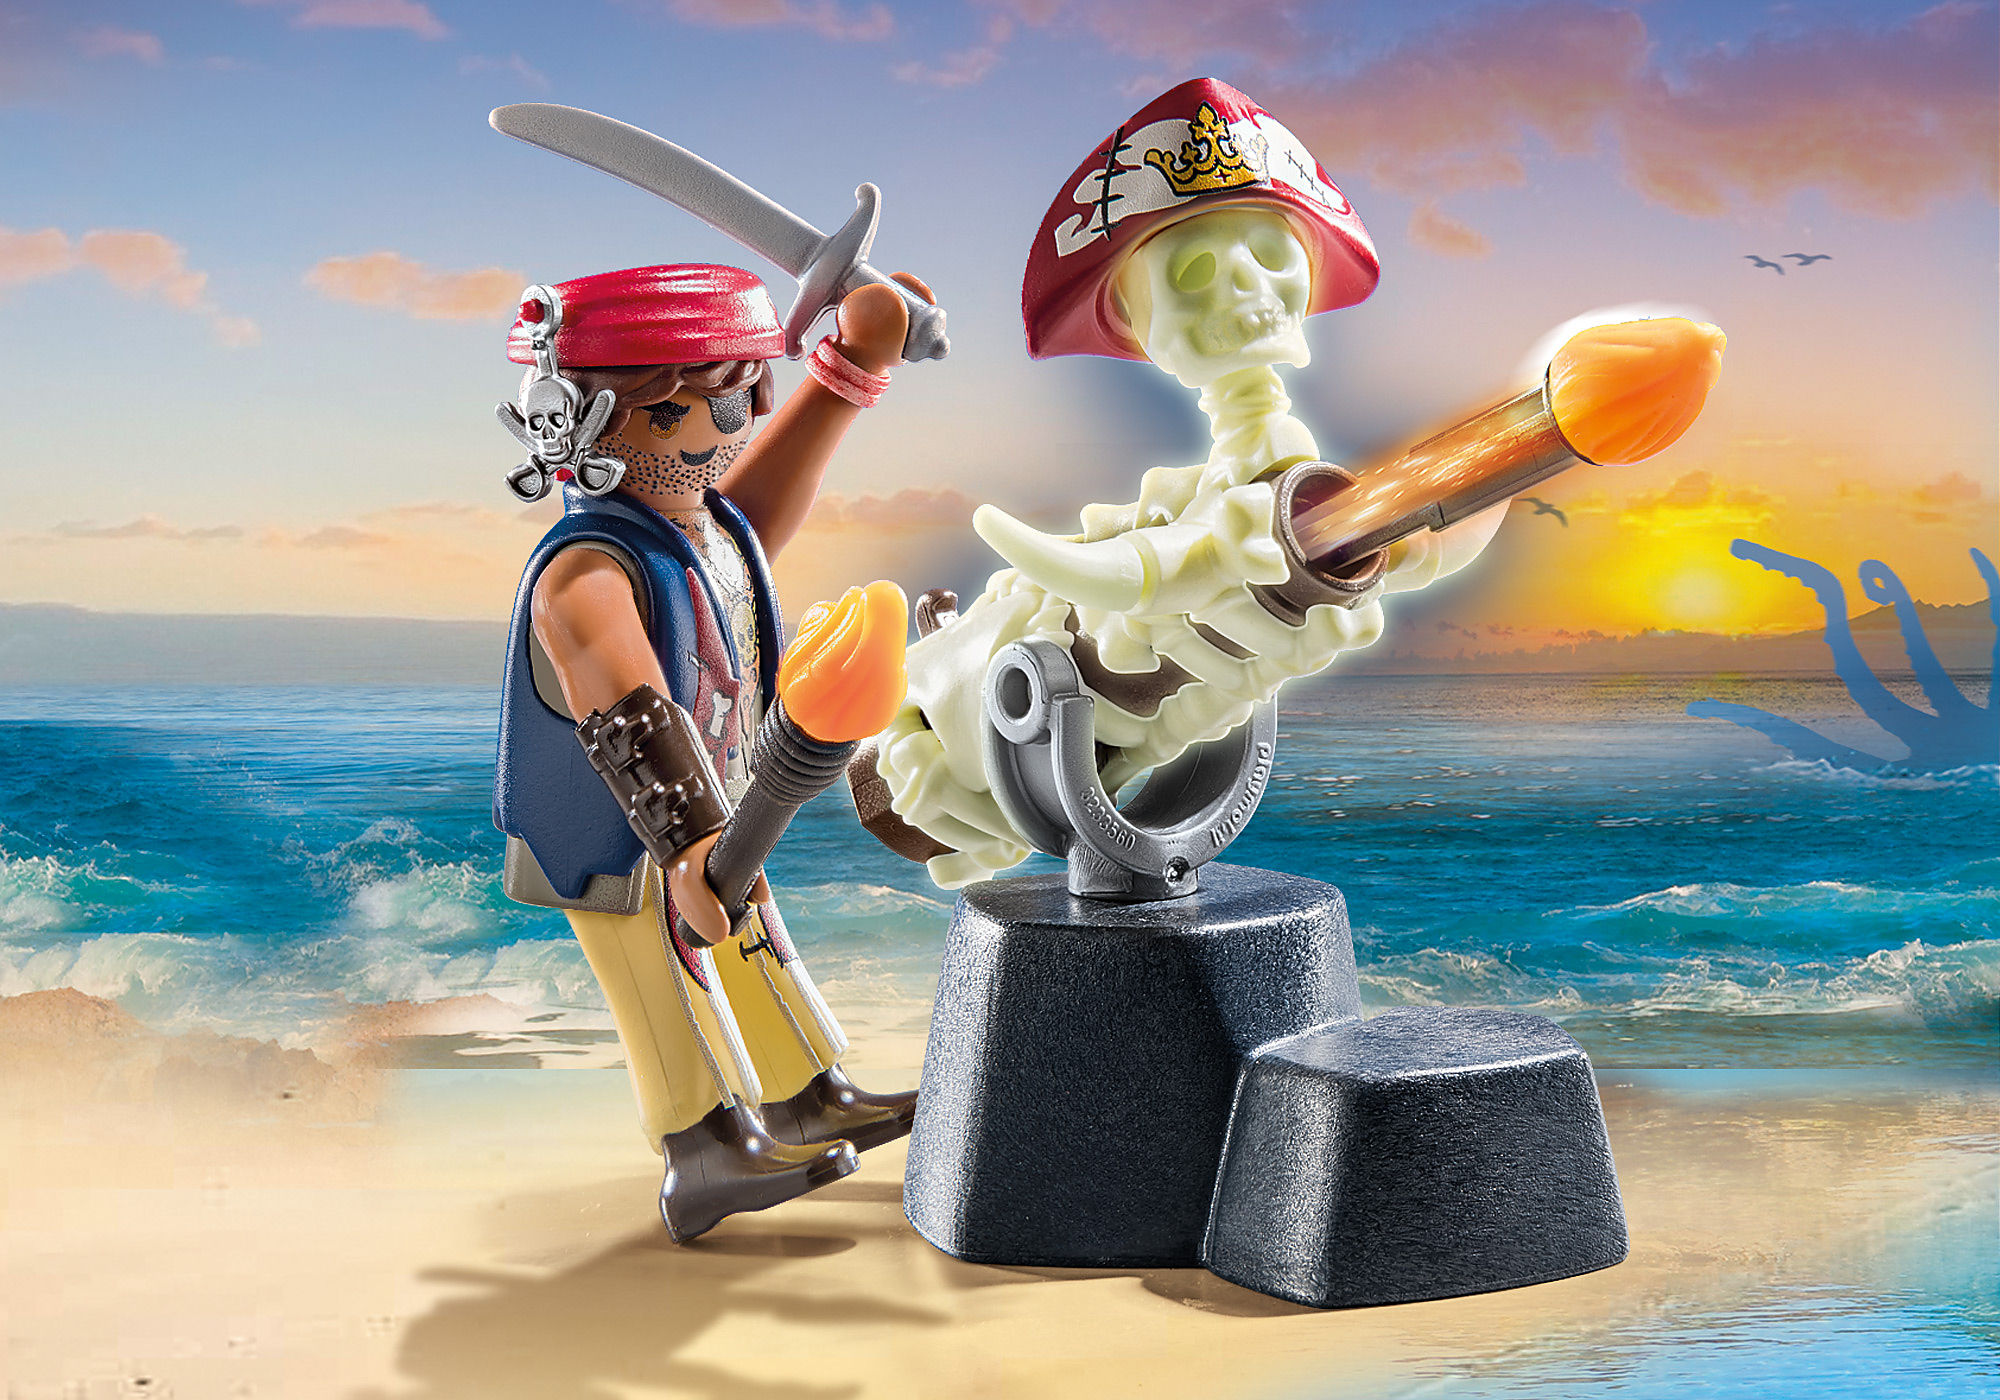 Playmobil Pirates 70273 Capitaine pirate et soldat